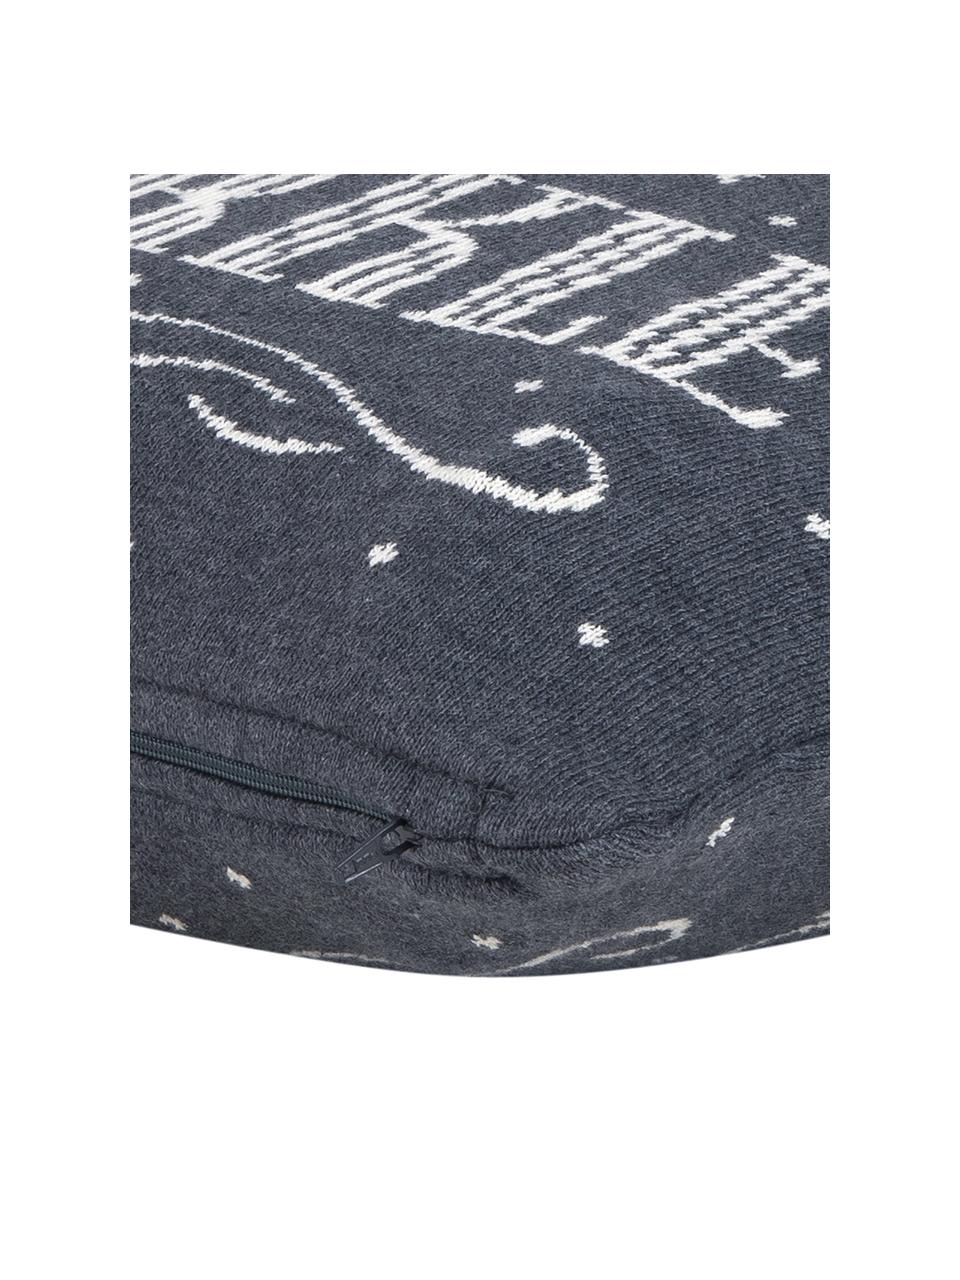 Kissenhülle Sparkle in Grau/Weiss mit Schriftzug, Baumwolle, Grau, Cremeweiss, 40 x 40 cm